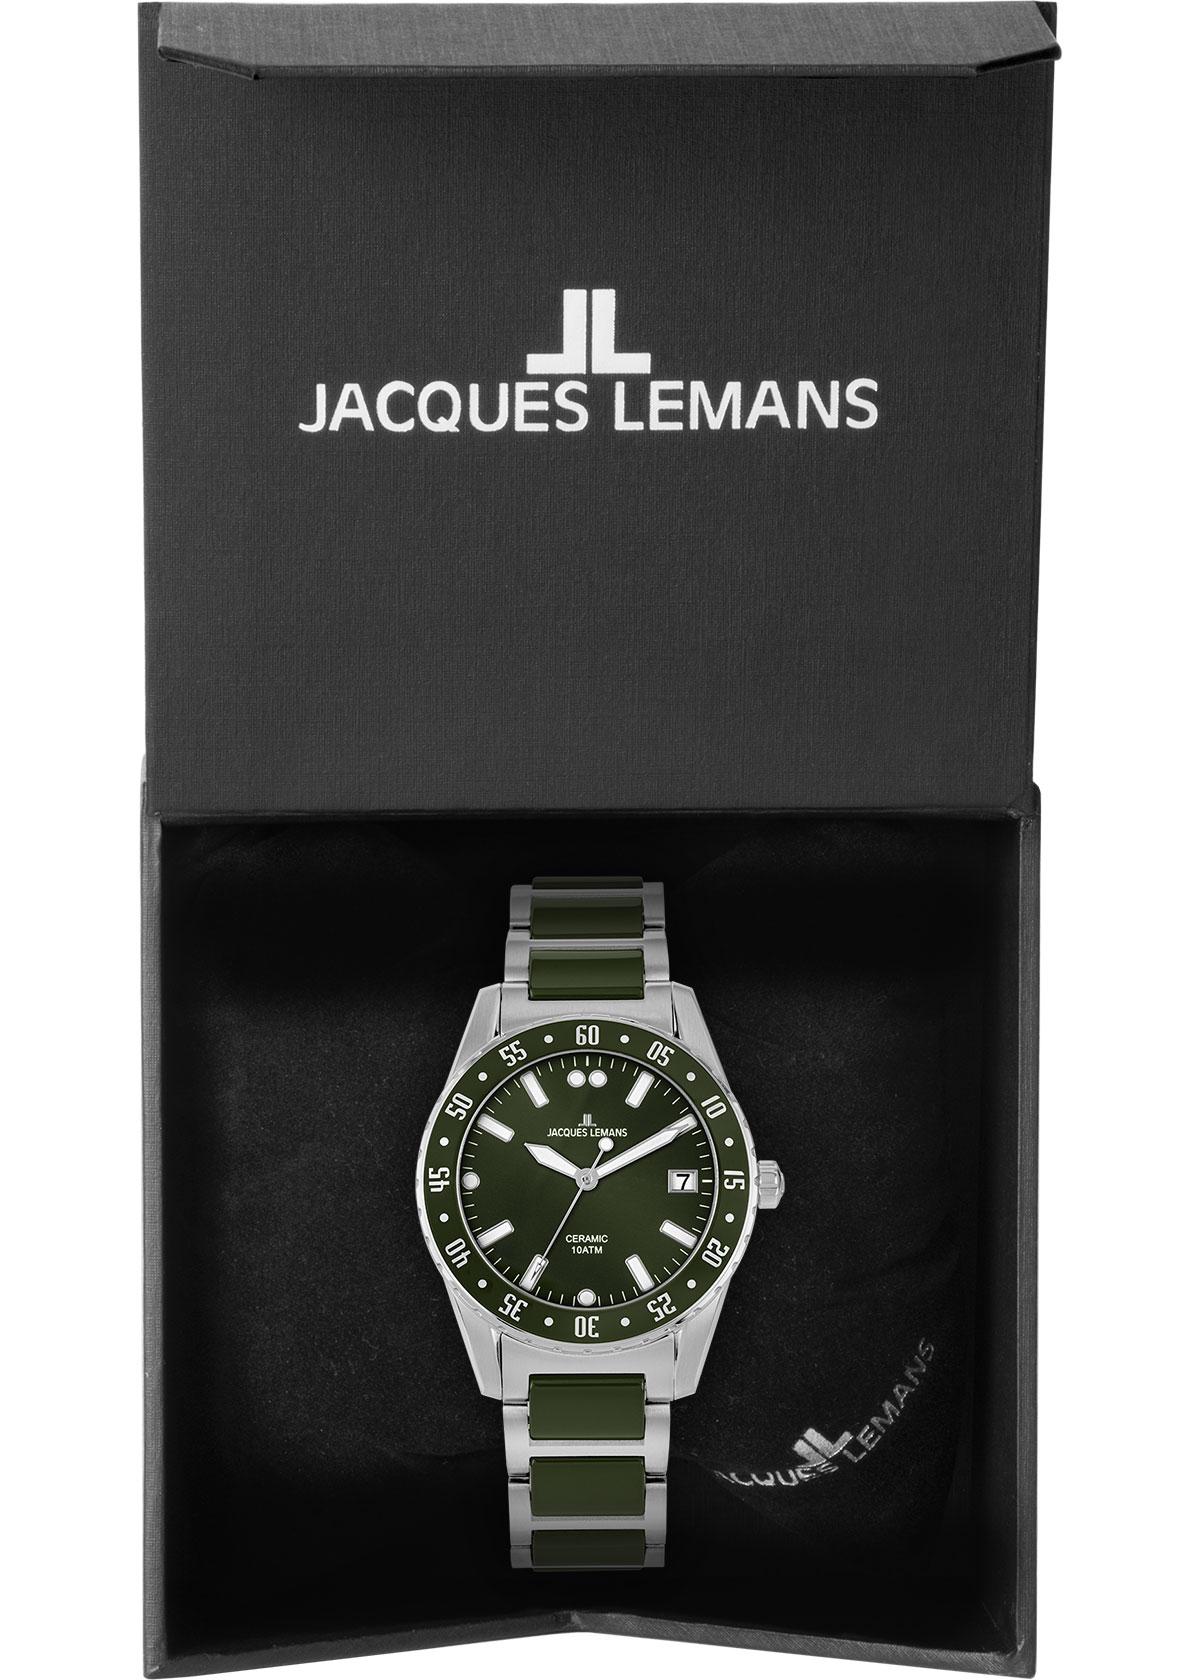 Ceramic мужские купить часы High - Lemans Jacques 42-10C, Tech